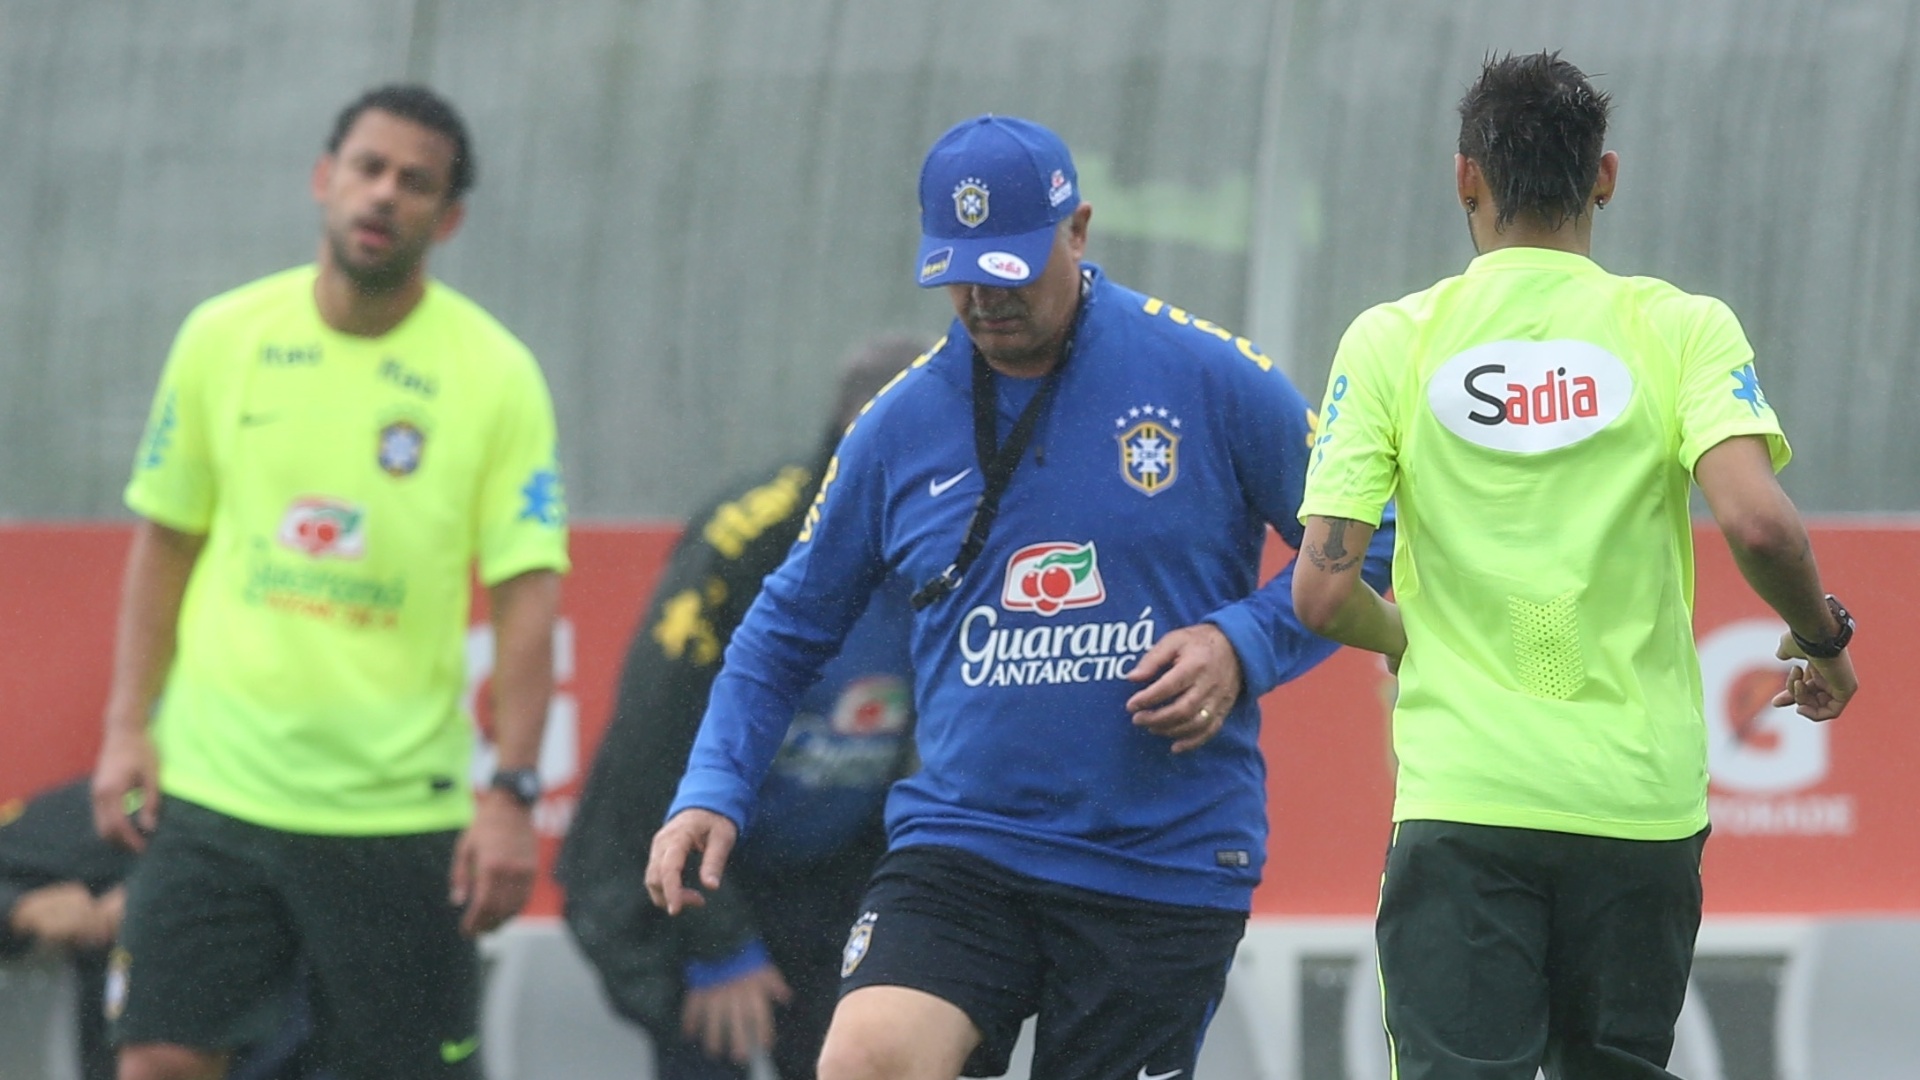 28.mai.2014 - Felipão também participa de trabalho com bola no treino da seleção brasileira em Teresópolis